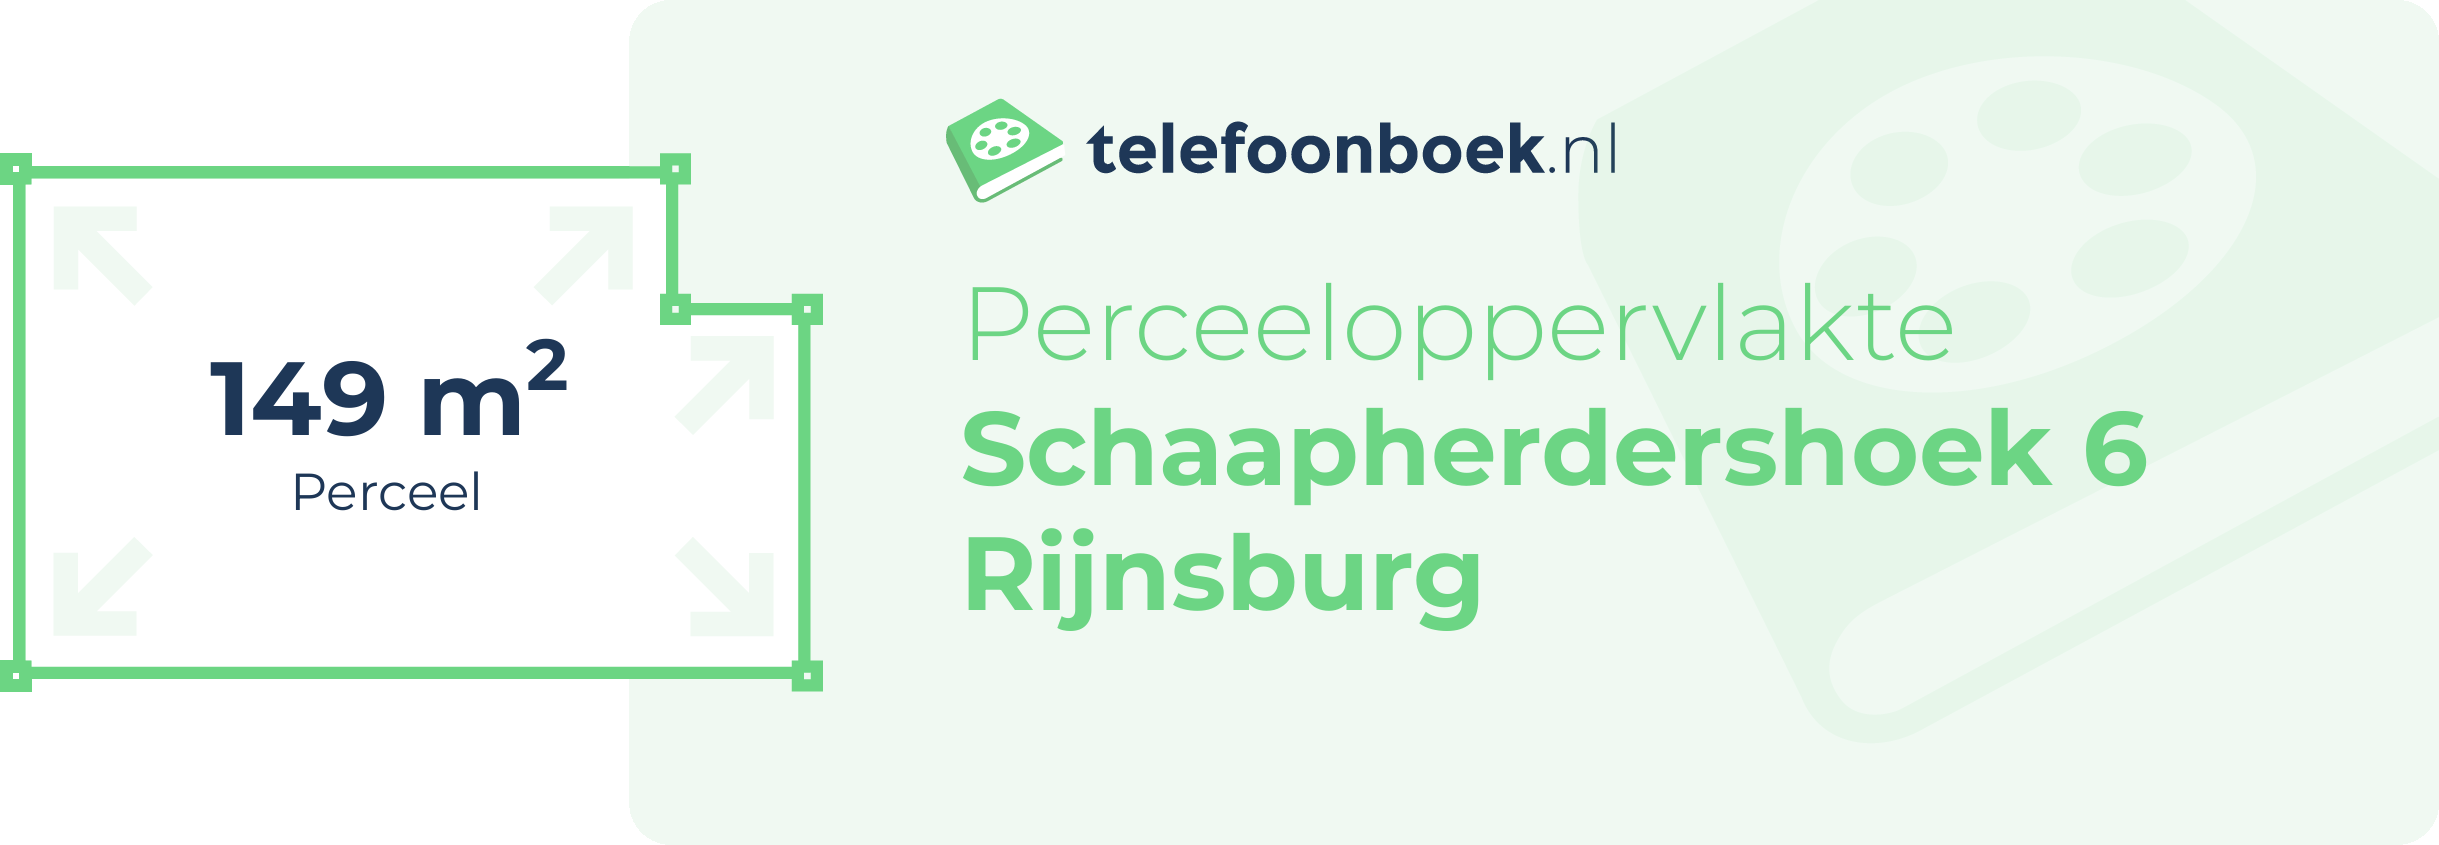 Perceeloppervlakte Schaapherdershoek 6 Rijnsburg